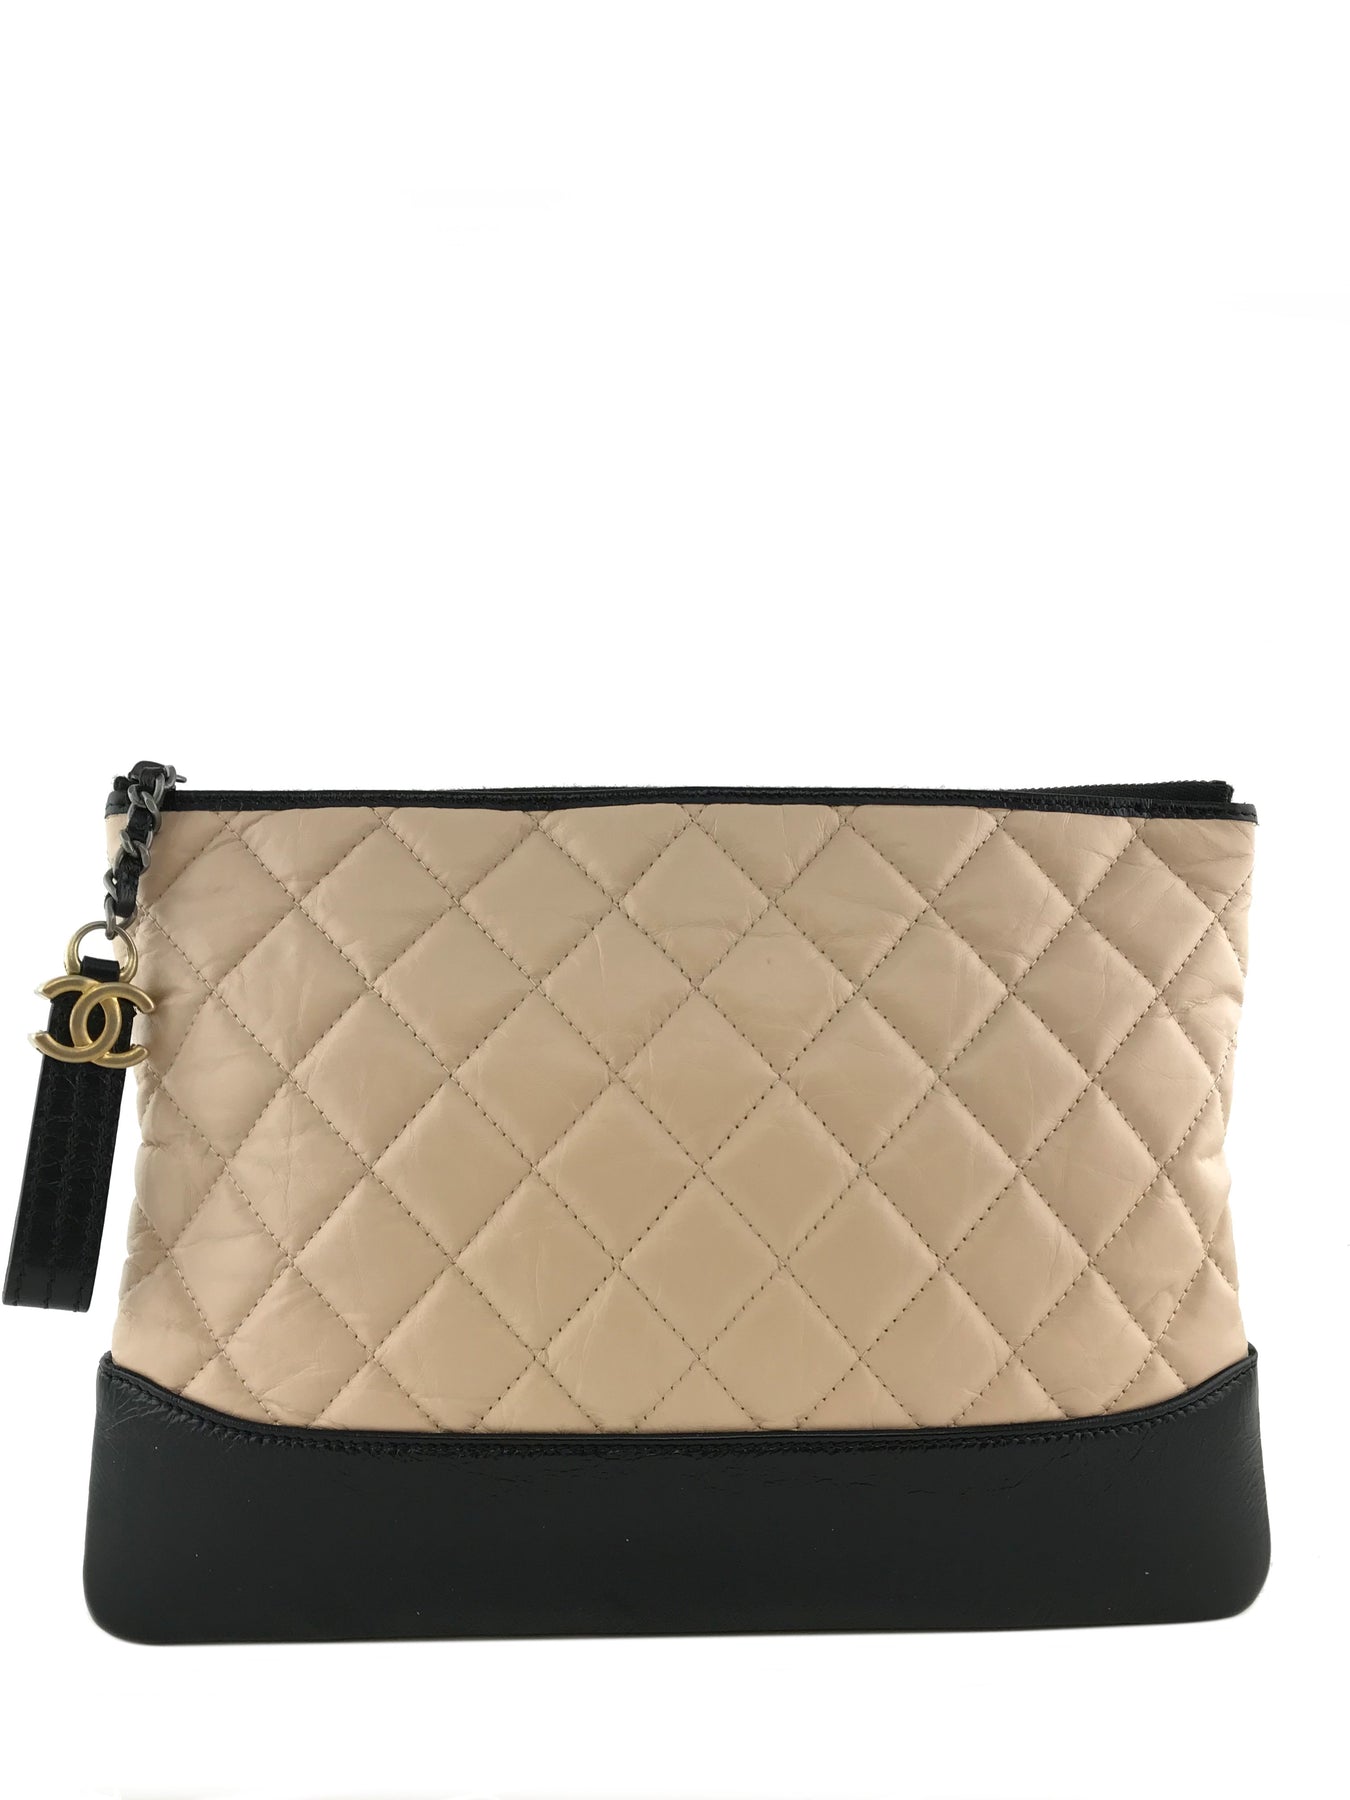 Chanel Gabrielle Clutch w/ Chain - Black Clutches, Handbags